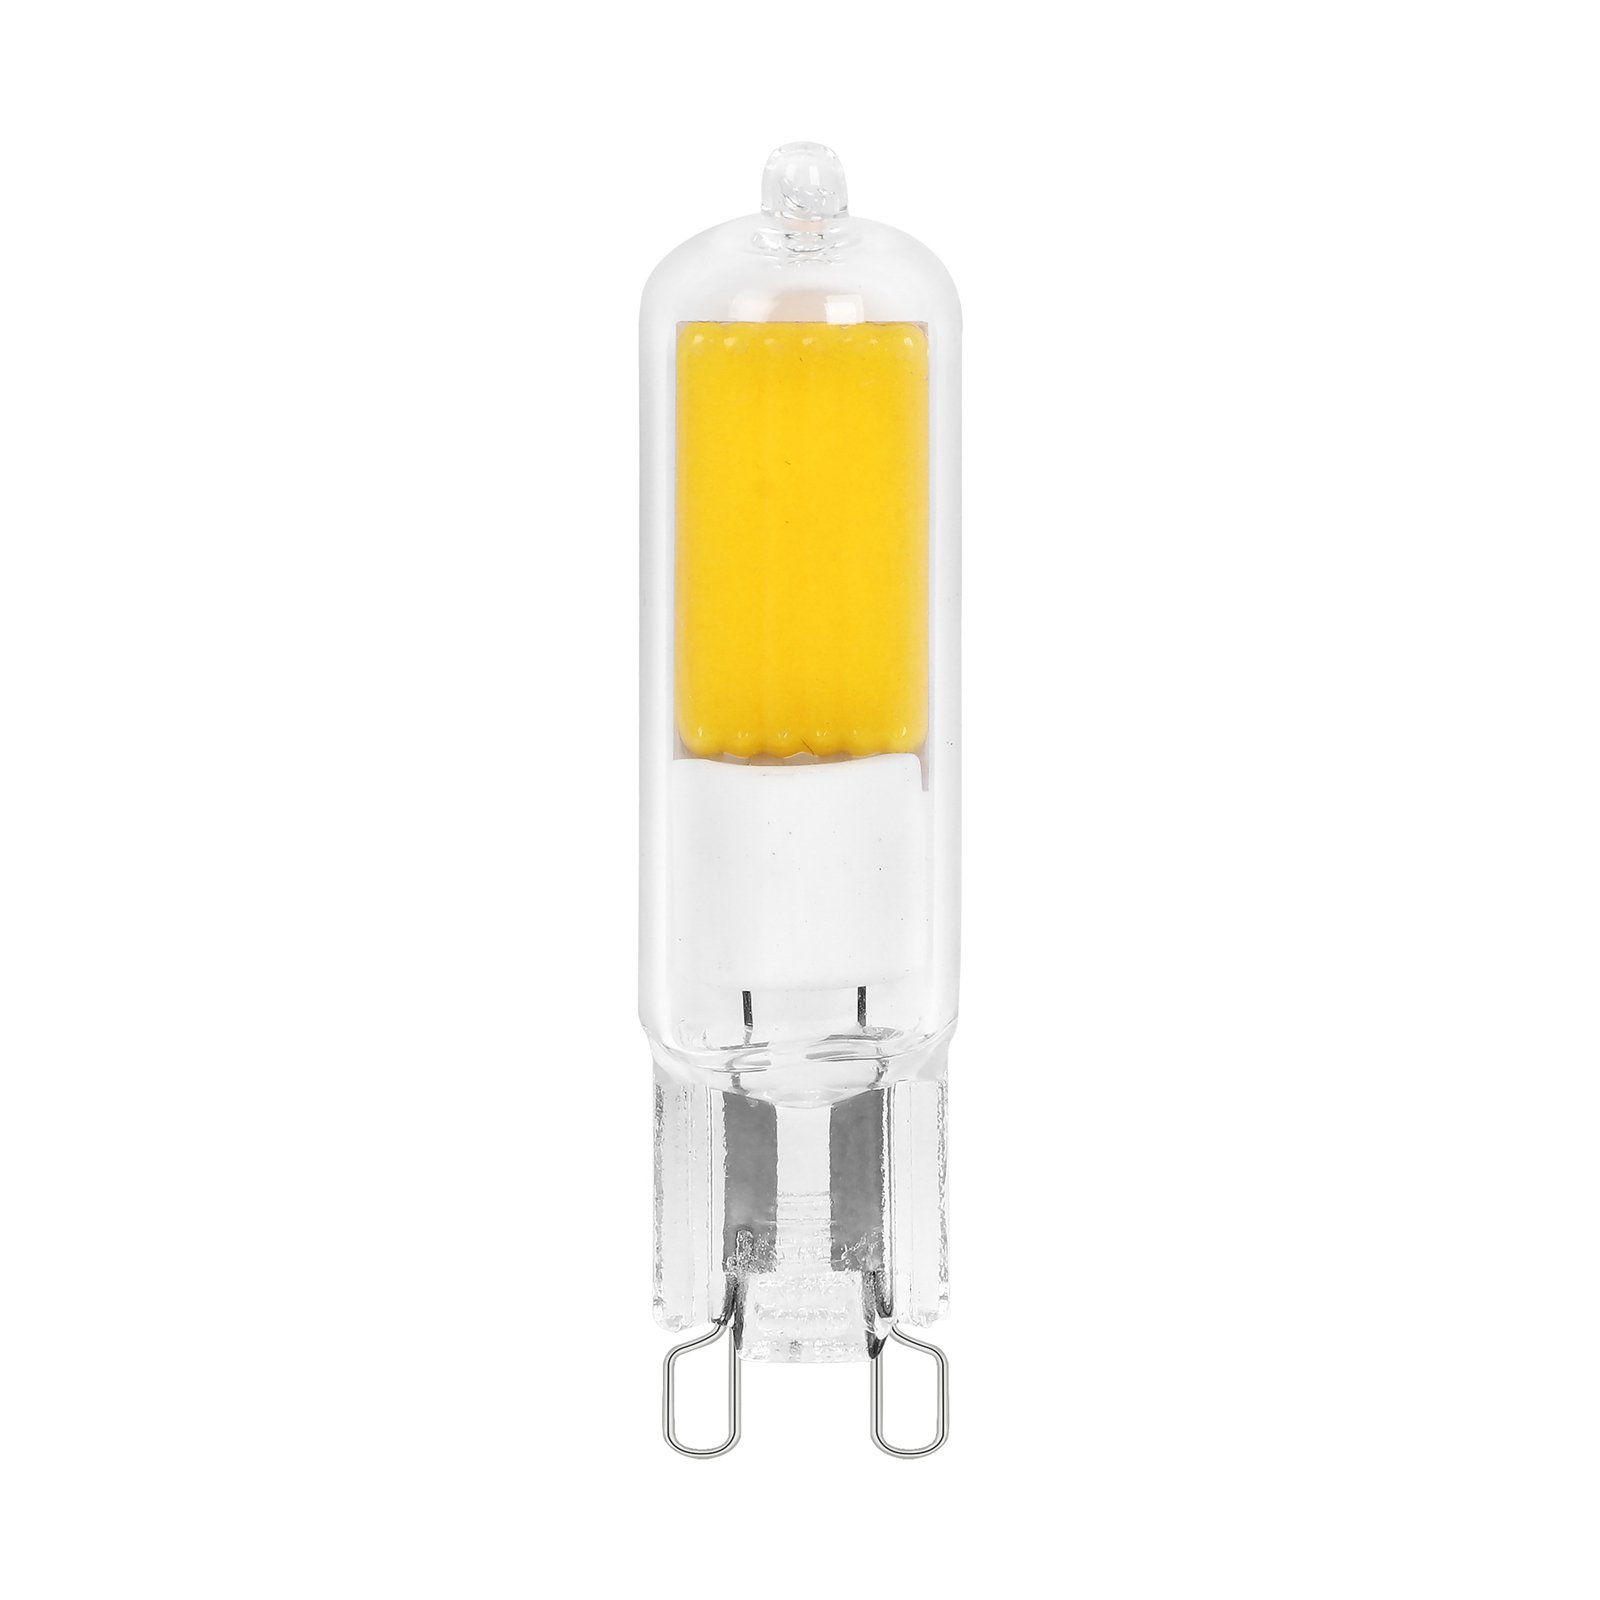 Arcchio bi-pin LED bulb, G9, 2.2W, 3000K, set of 10